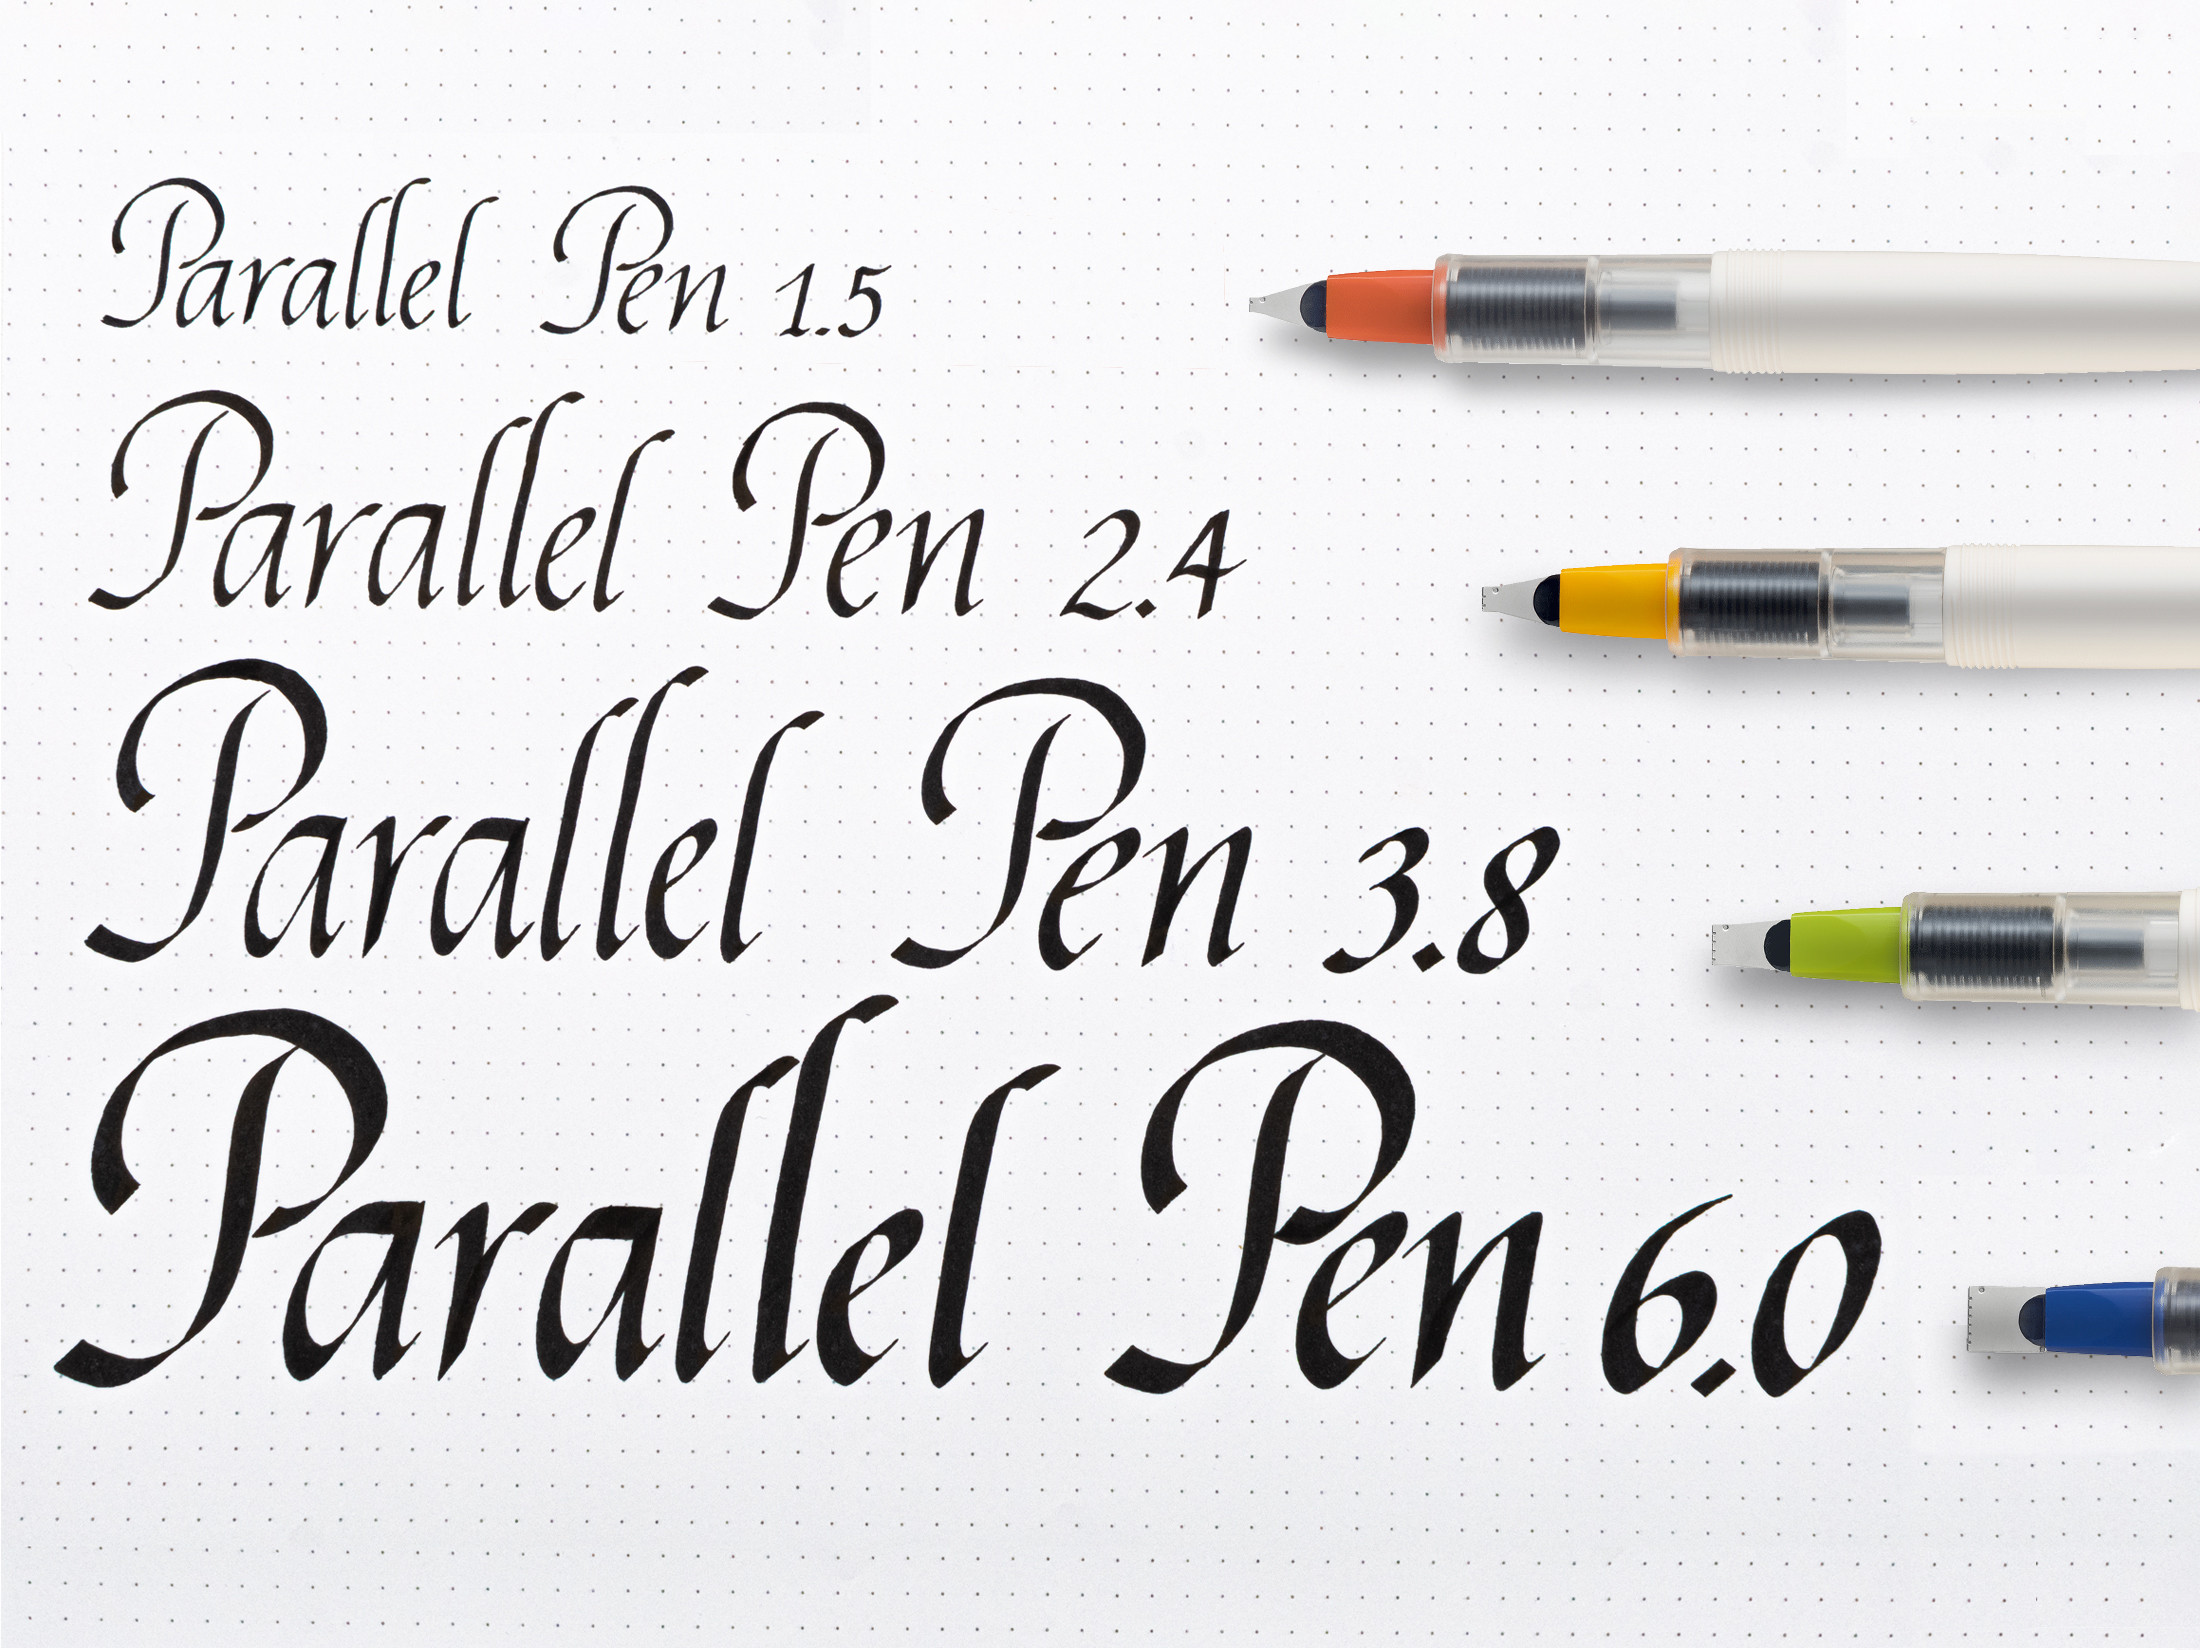 Parallel Pen 2.4